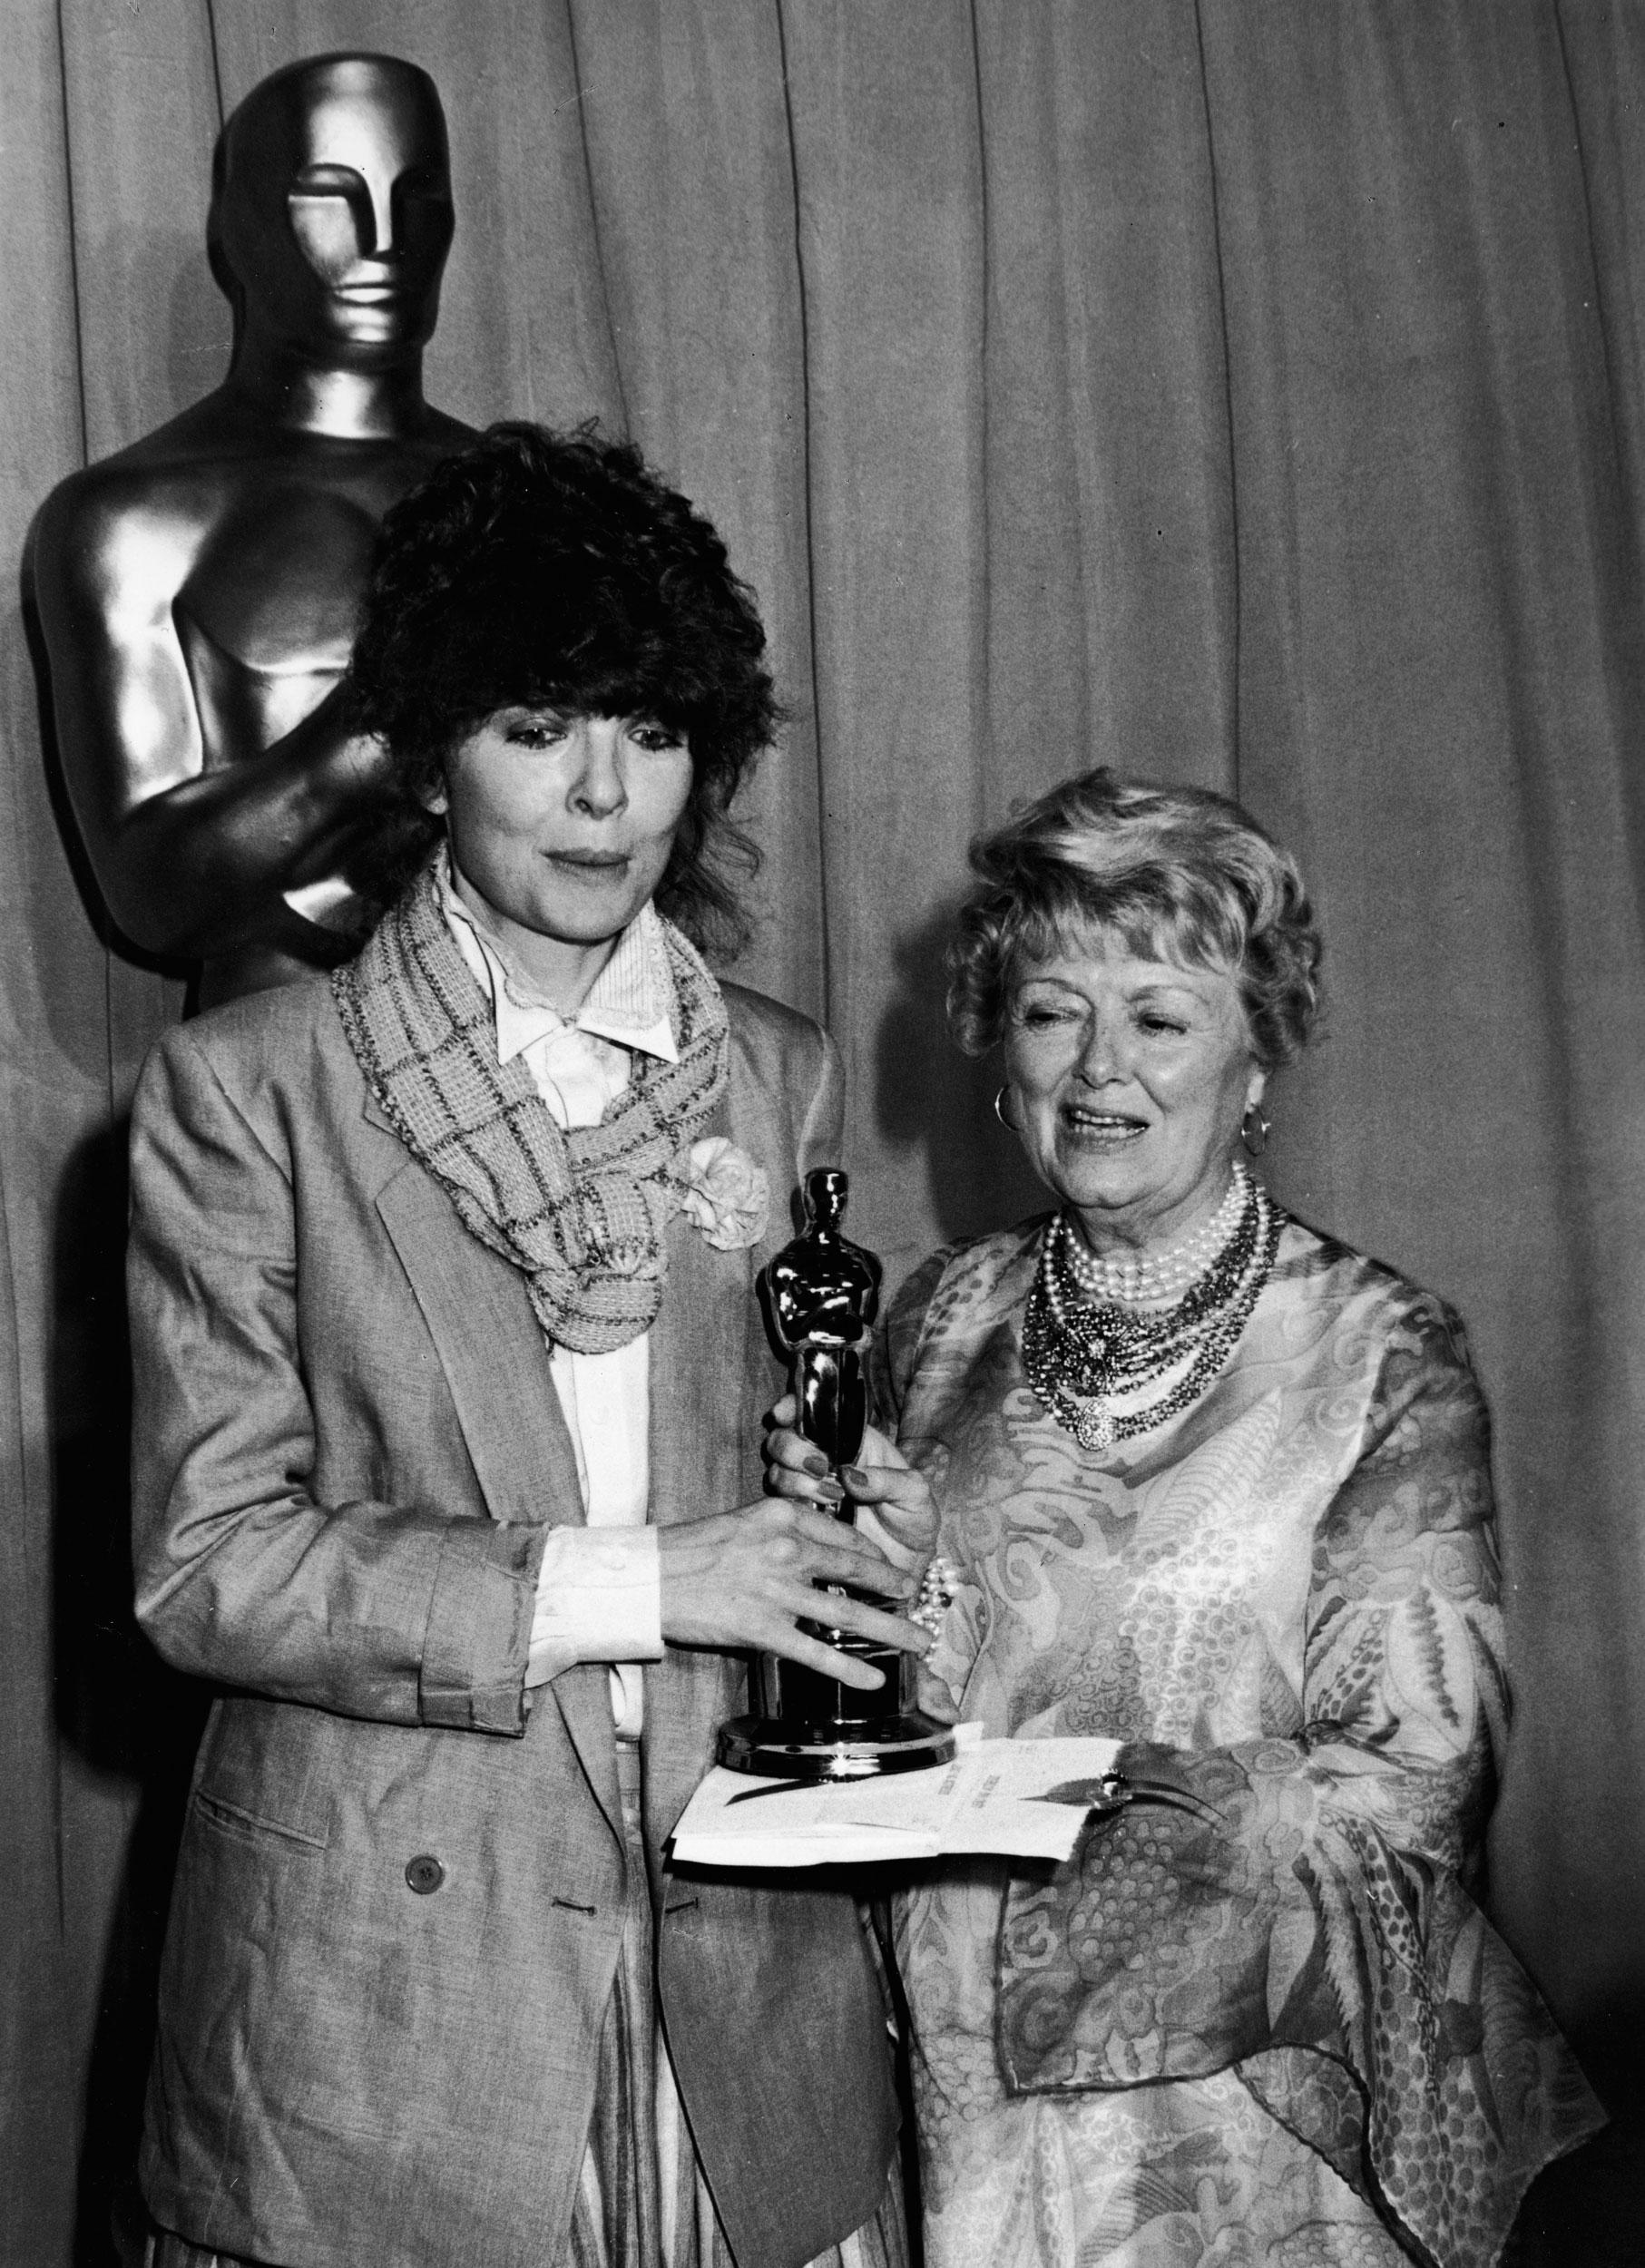 Diane Keaton 1978 ”Keaton har precis samma jag-gör-som-jag-vill-attityd som Streisand så det var egentligen helt naturligt att hon tog emot en Oscar för hennes roll Annie Hall klädd precis som Annie Hall. Filmens kostymör protesterade men Woddy Allen övertygade “Leave her, she’s a genious”. Han har aldrig haft mer rätt.”